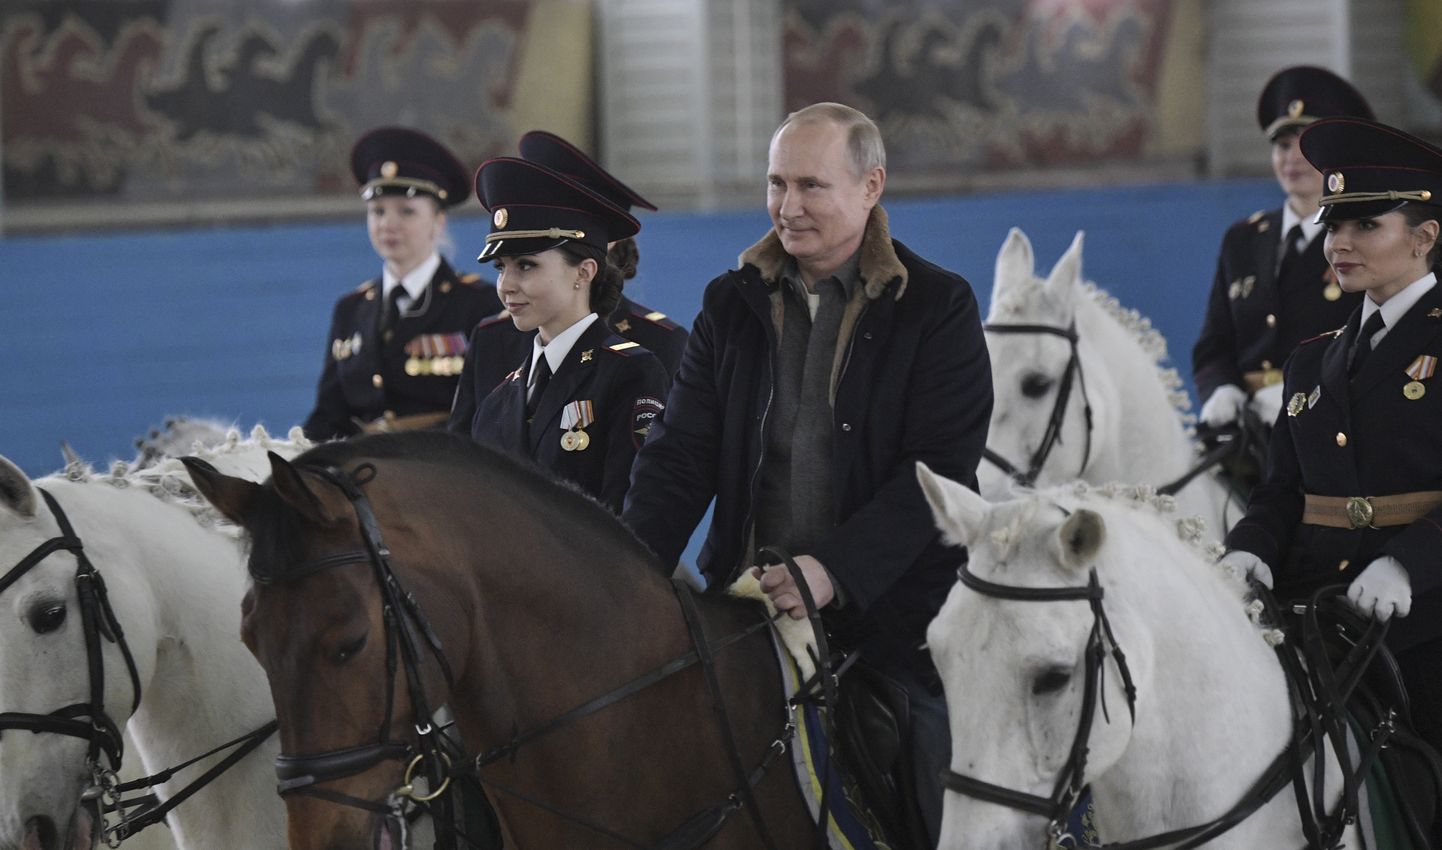 Venemaa president Vladimir Putin võib küll hobusega ratsutada, kuid Venemaa ratsasportlastel Pariisi asja pole.